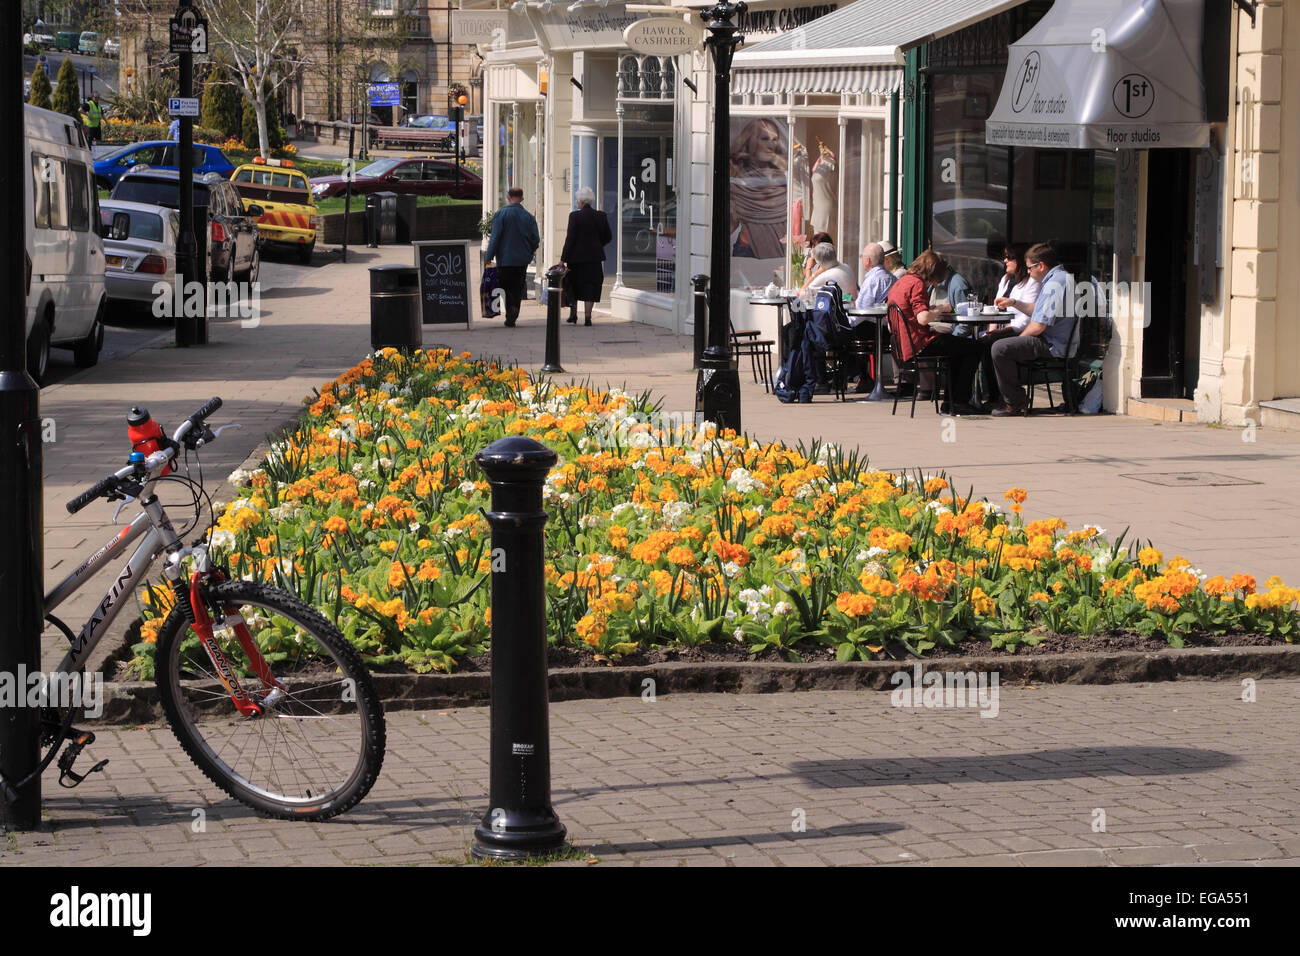 Montpelier Parade in der Sonne mit Frühlingsblumen, Fahrrad und Bürgersteig Tische vor einem Café / Harrogate / UK Stockfoto